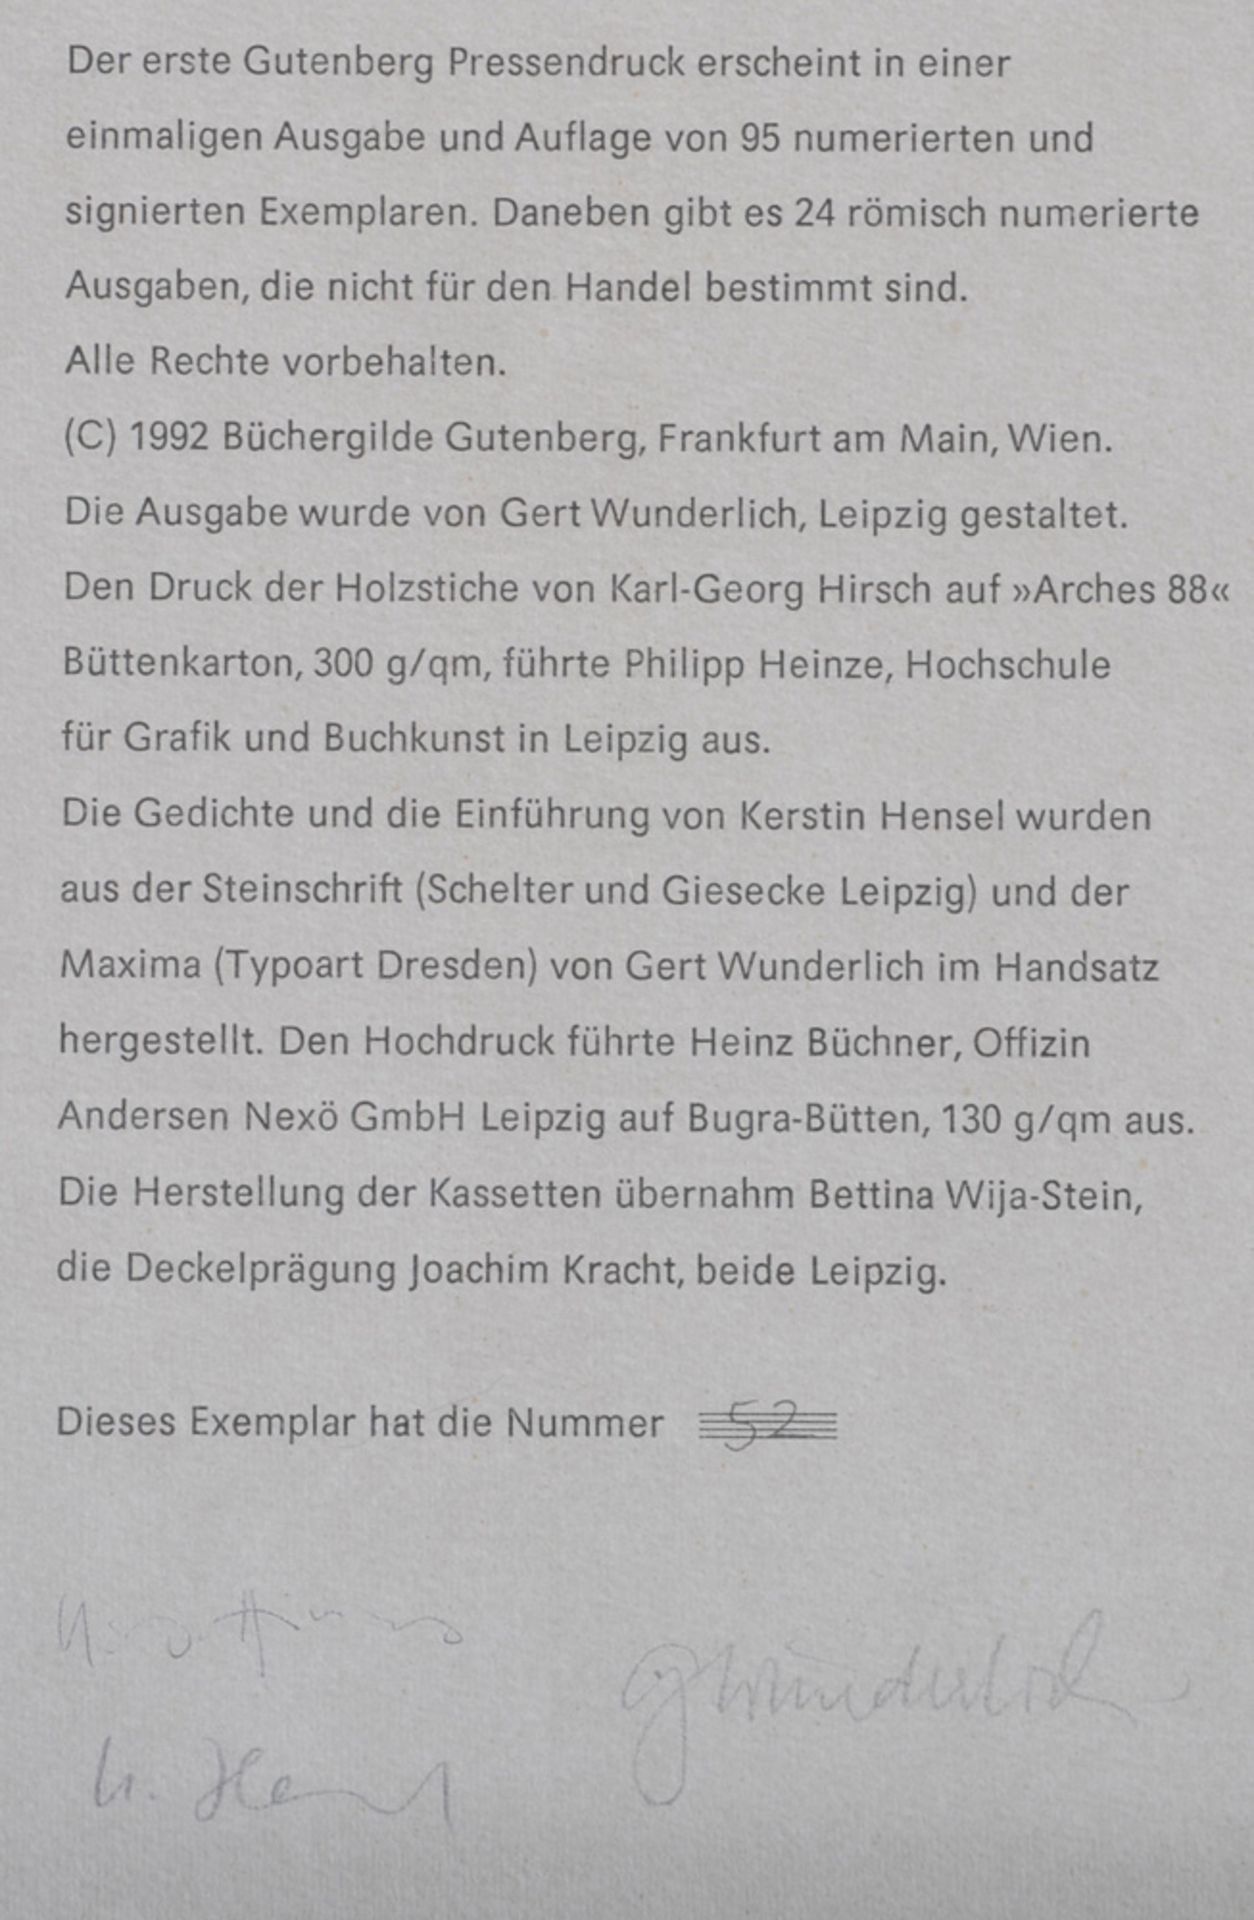 Karl-Georg Hirsch, „Das buchgraphische Werk“ - Eine Bibliographie von Herbert Kästner unter - Image 3 of 5